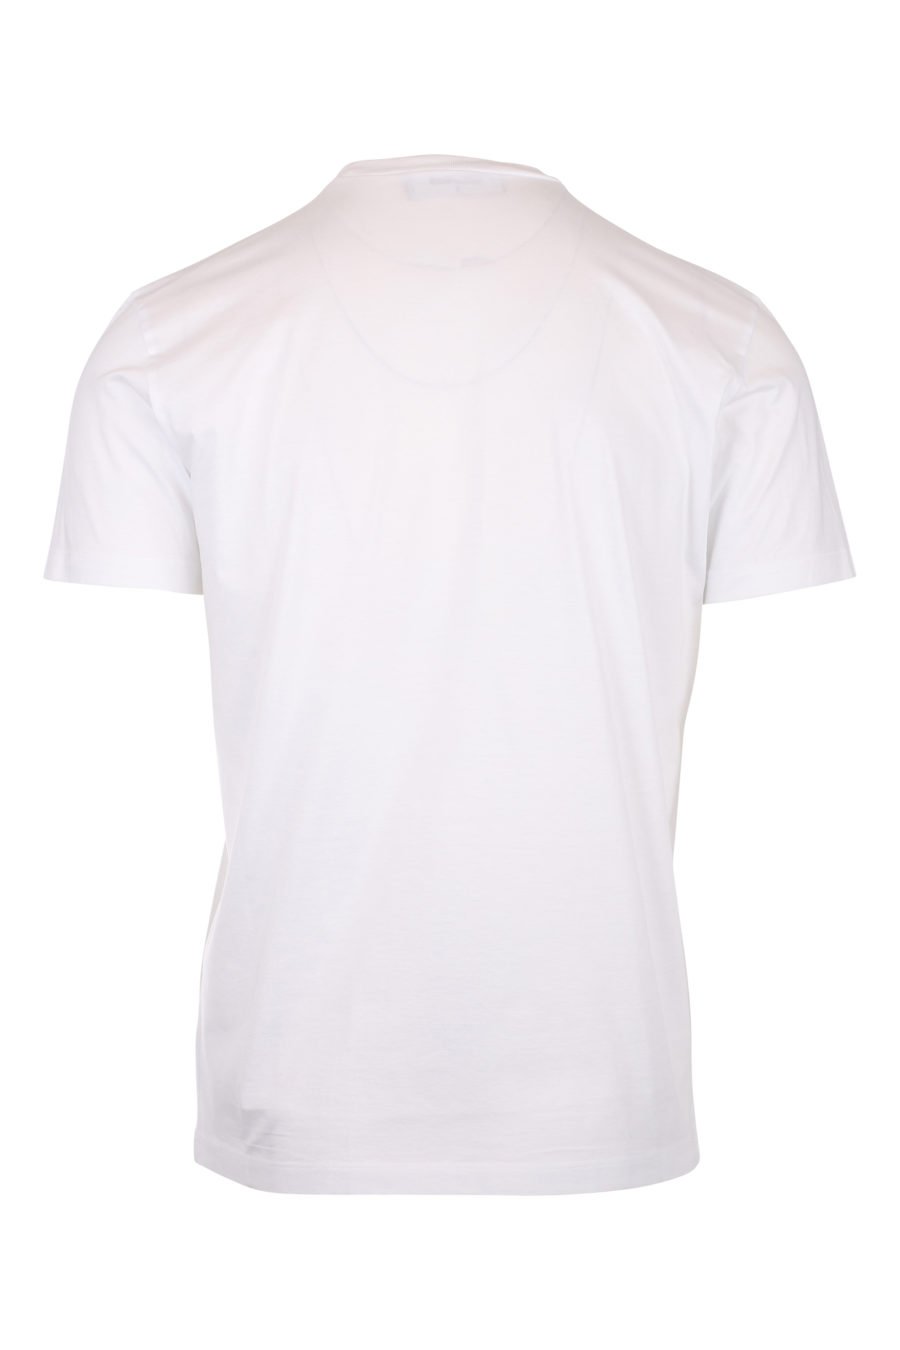 T-shirt weiß mit kleinem Logo ceresio 9 - IMG 9778 1